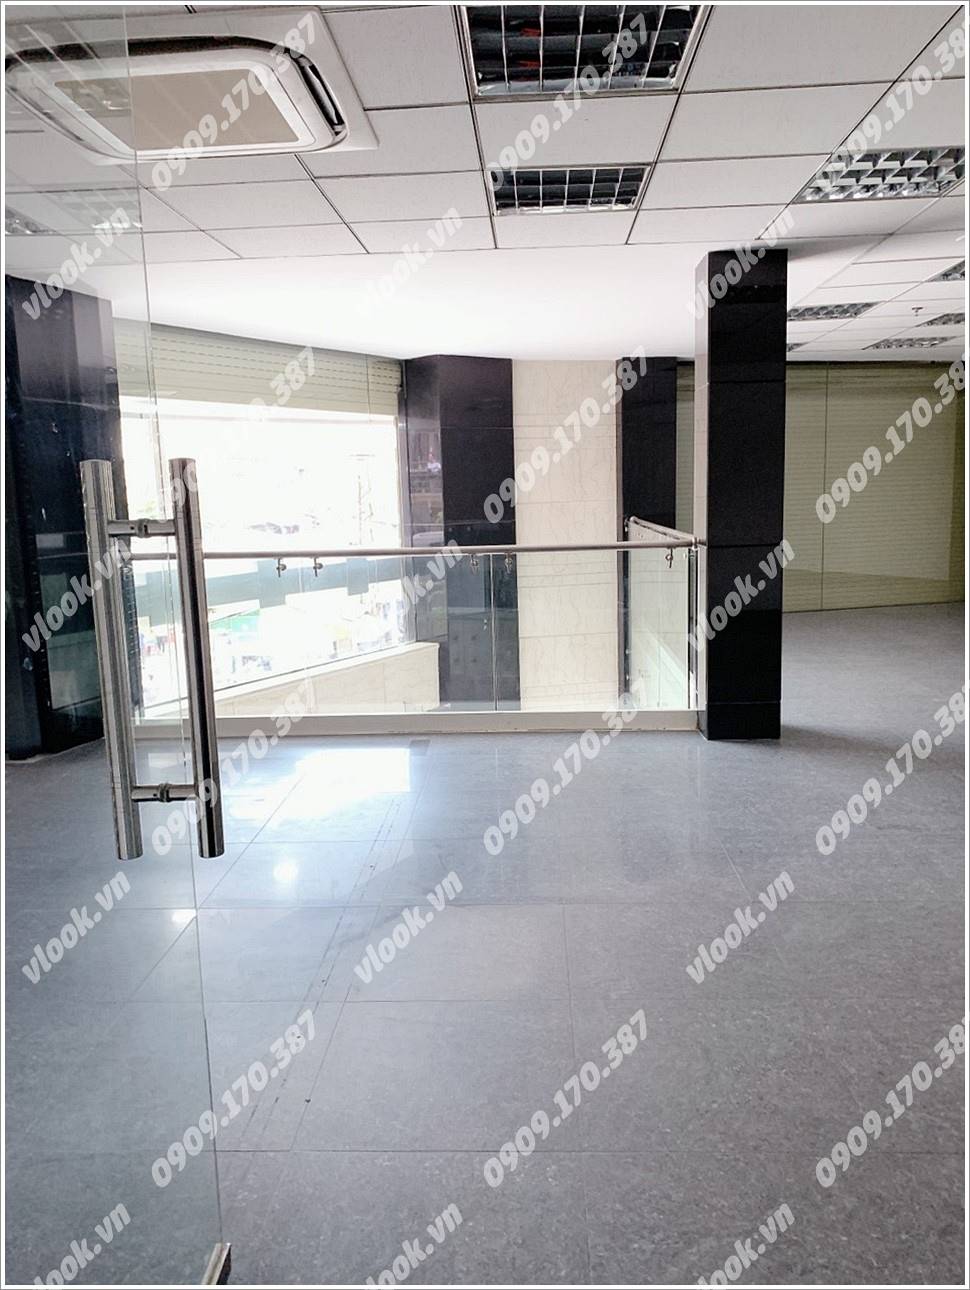 Cao ốc văn phòng cho thuê toà nhà Dodau Building Huỳnh Thúc Kháng, Quận 1, TPHCM - vlook.vn